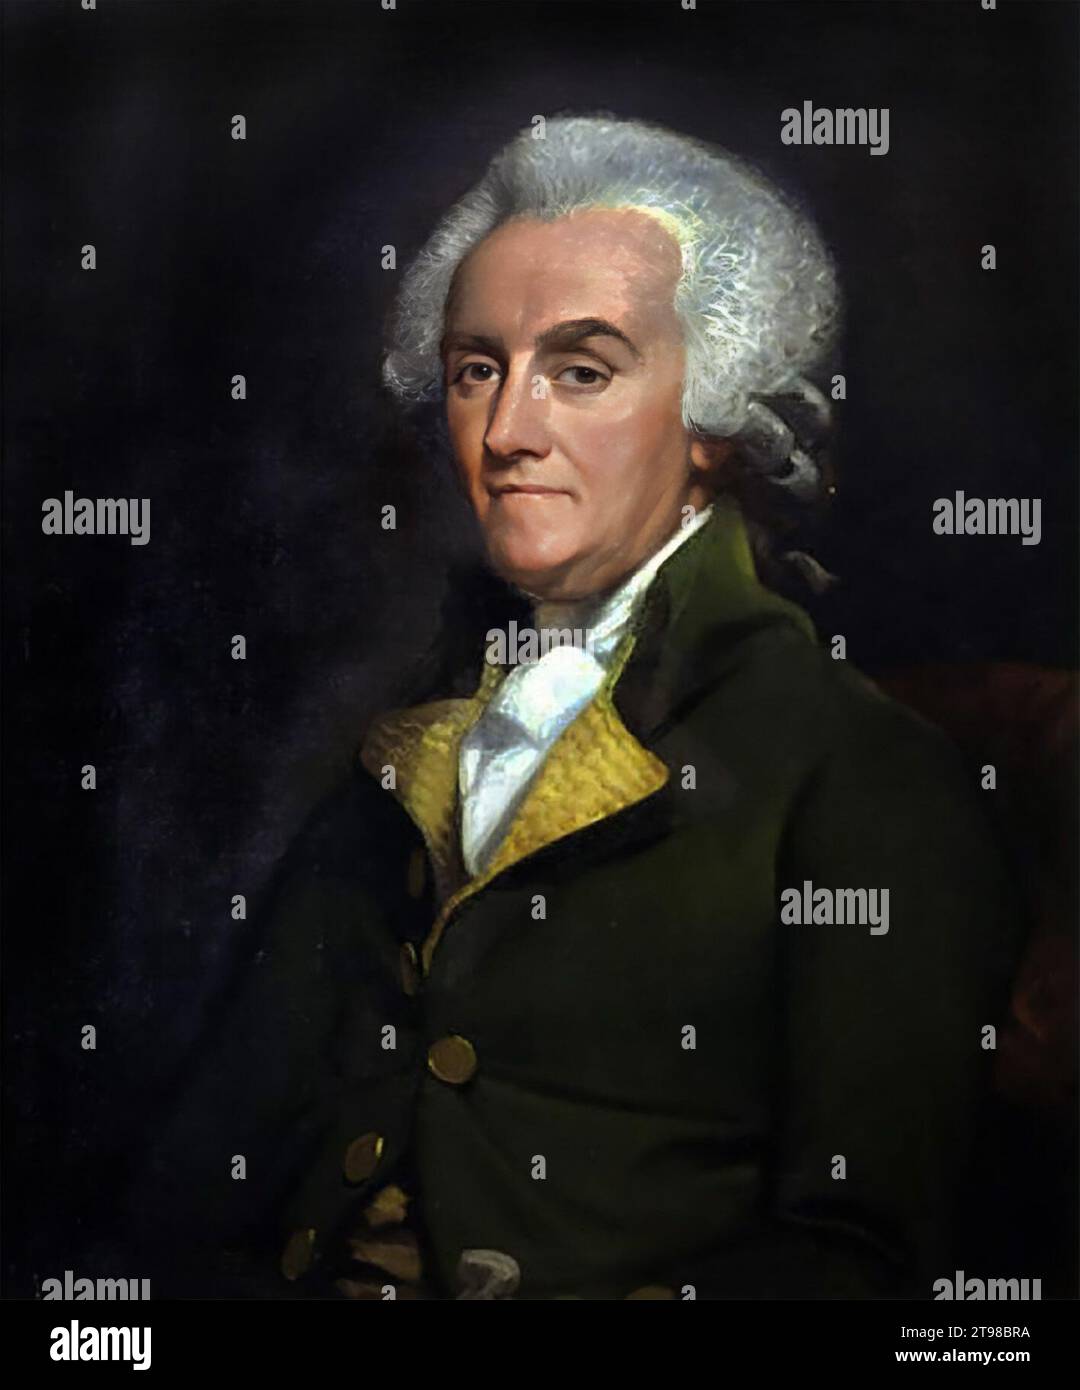 William Franklin. Portrait de l'avocat et homme politique américain William Franklin (1730-1813), attribué à Mather Brown, huile sur toile, v. 1790 Banque D'Images